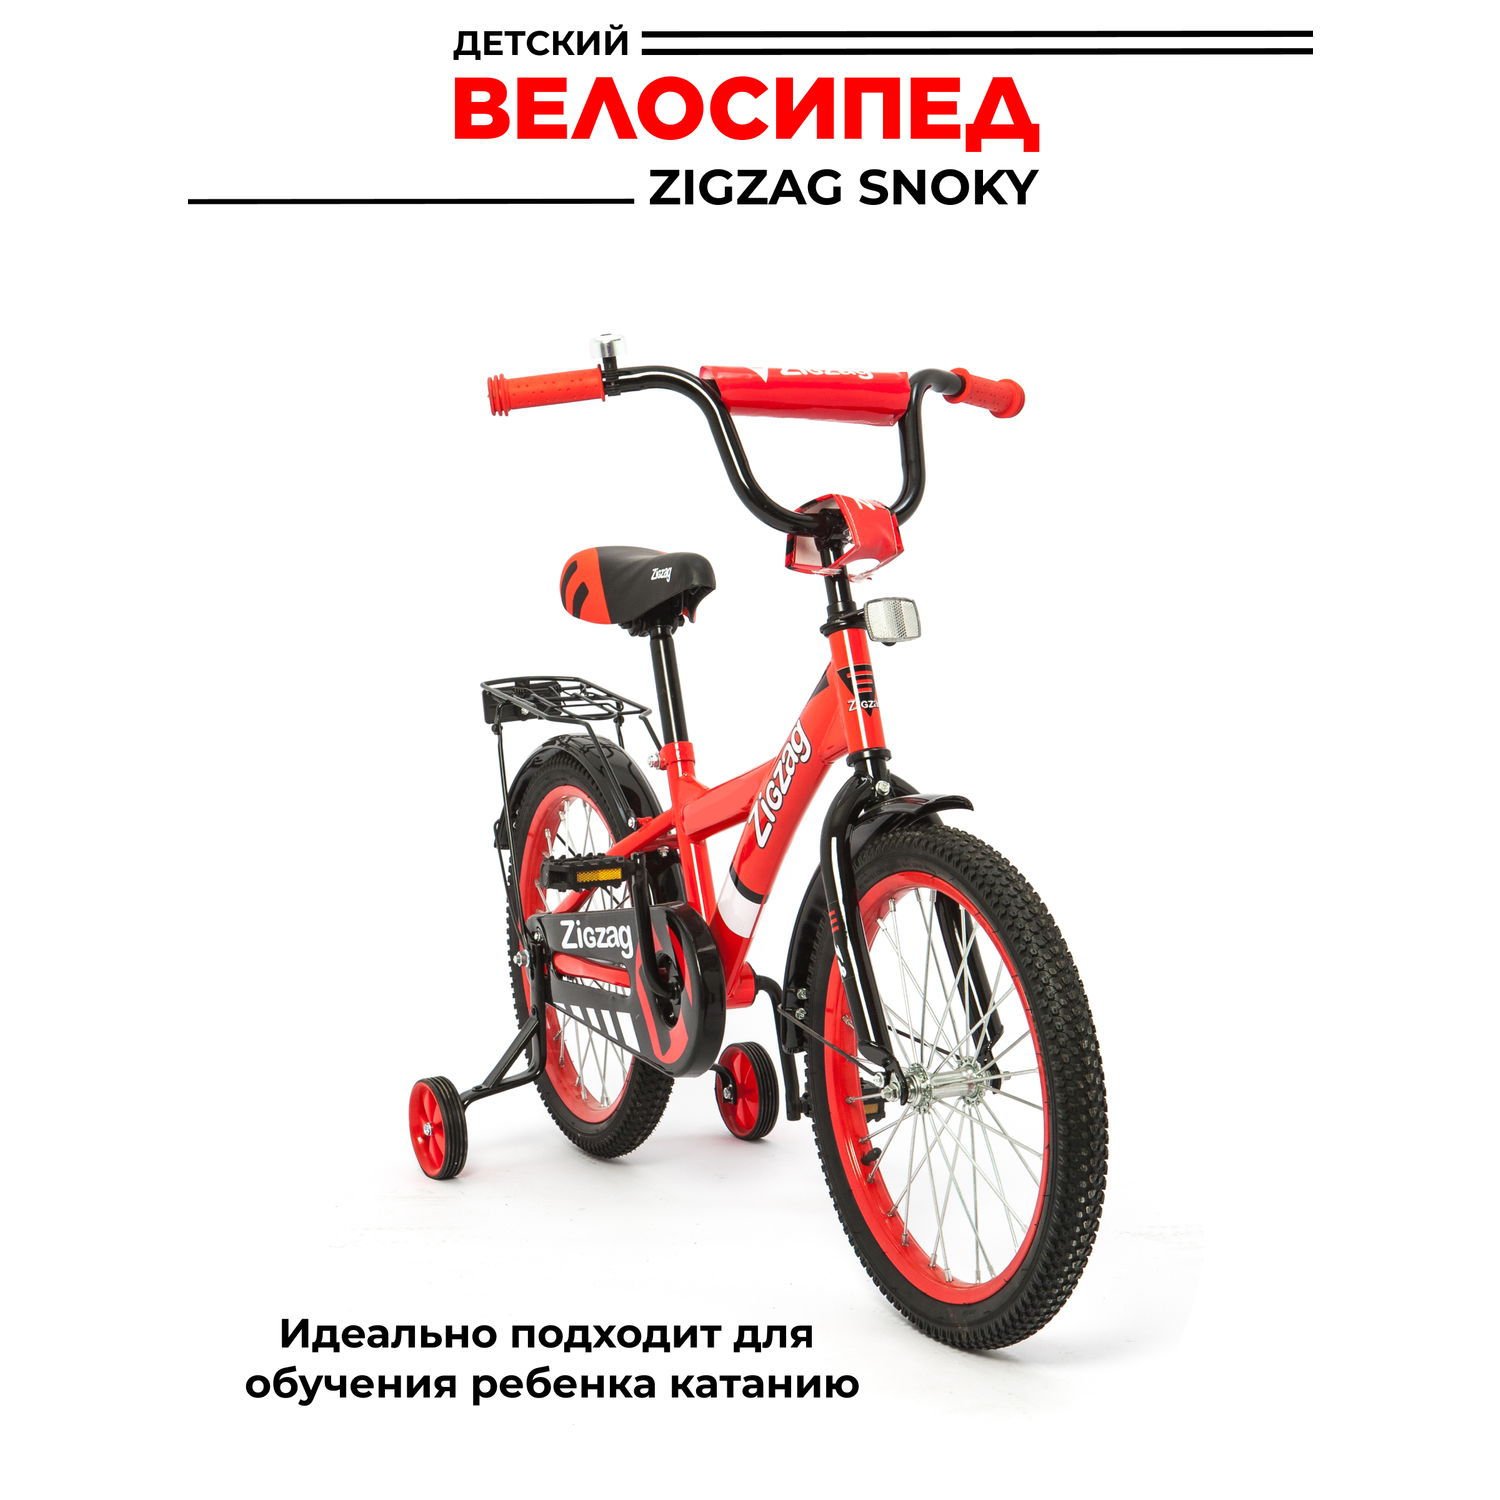 Велосипед ZigZag SNOKY красный 16 дюймов - фото 3